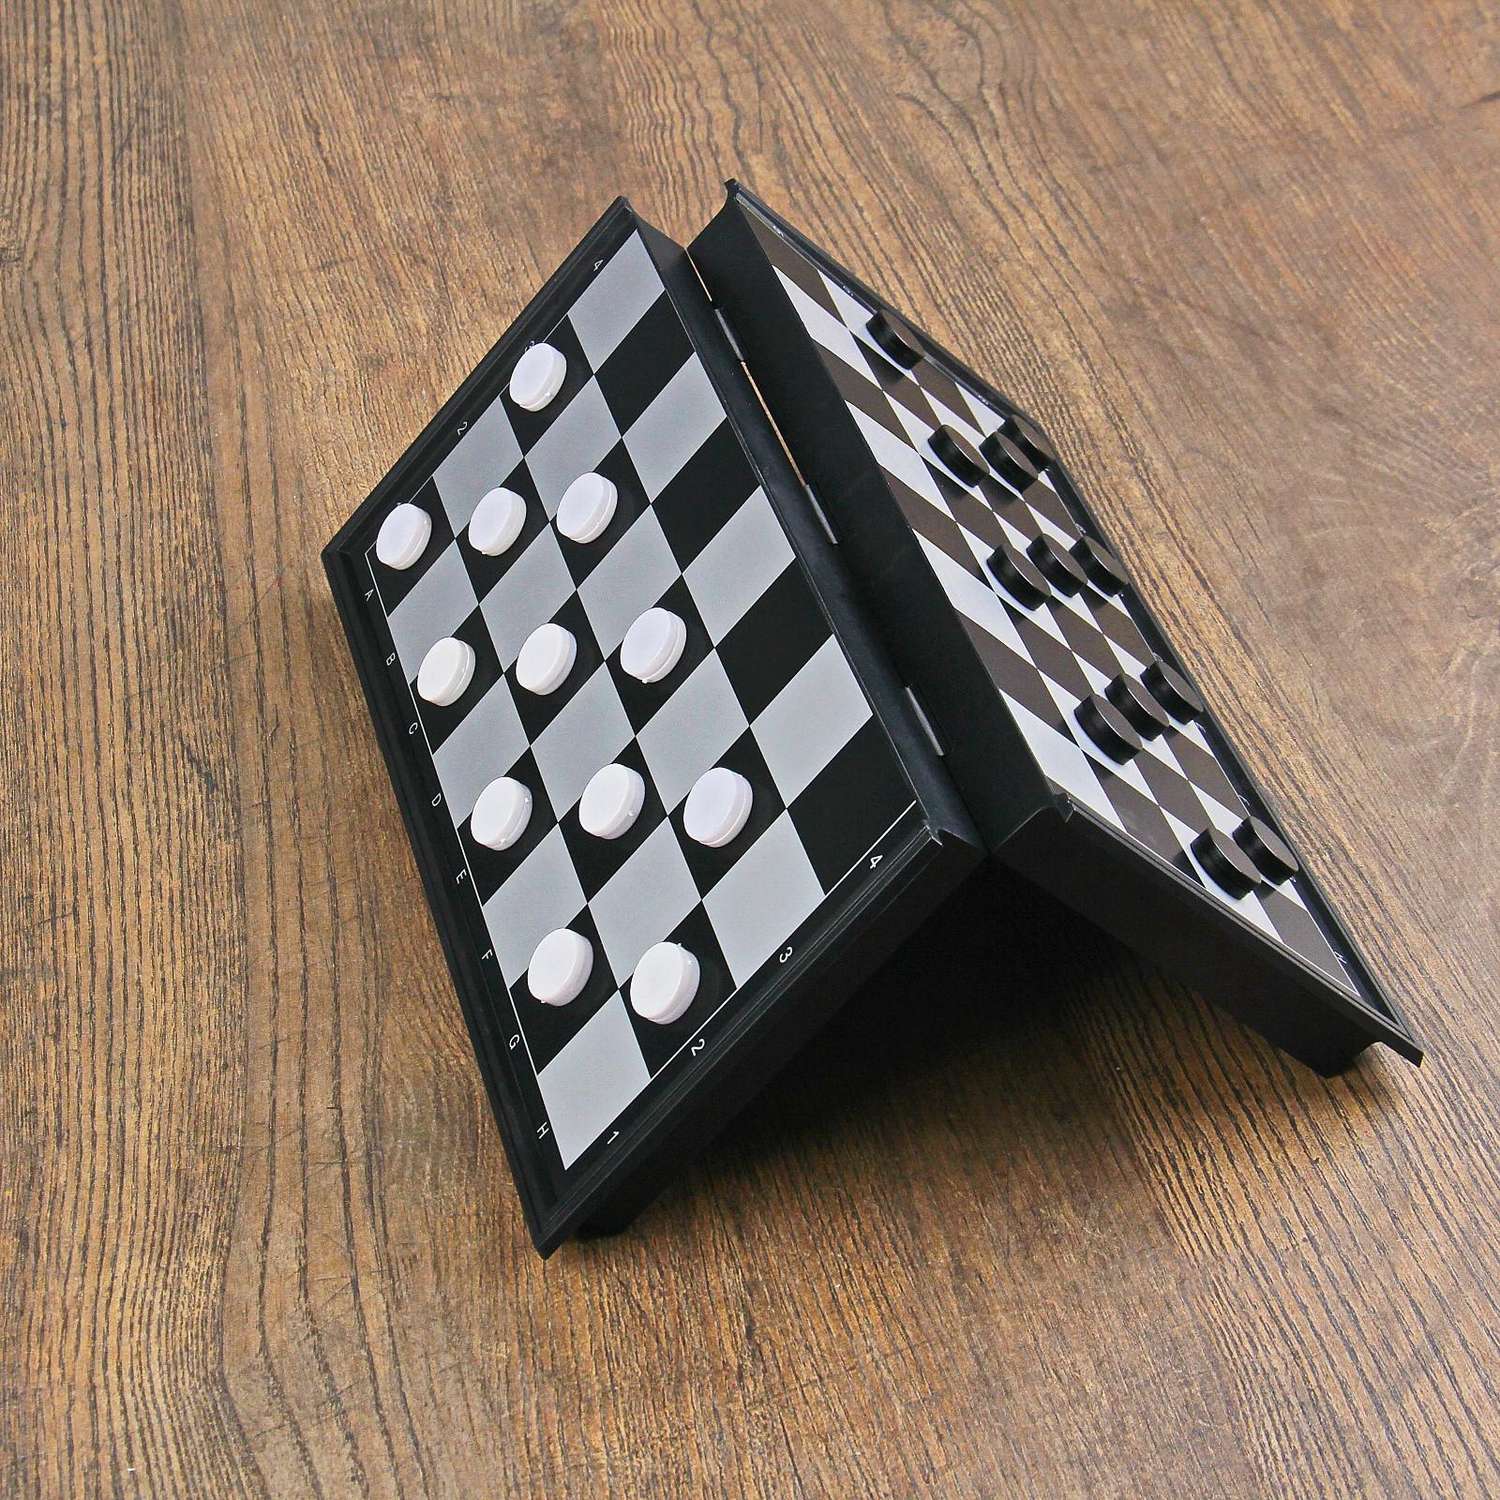 Настольная игра Sima-Land 3 в 1 «Классика» шахматы шашки нарды магнитная доска 25х25 см - фото 16